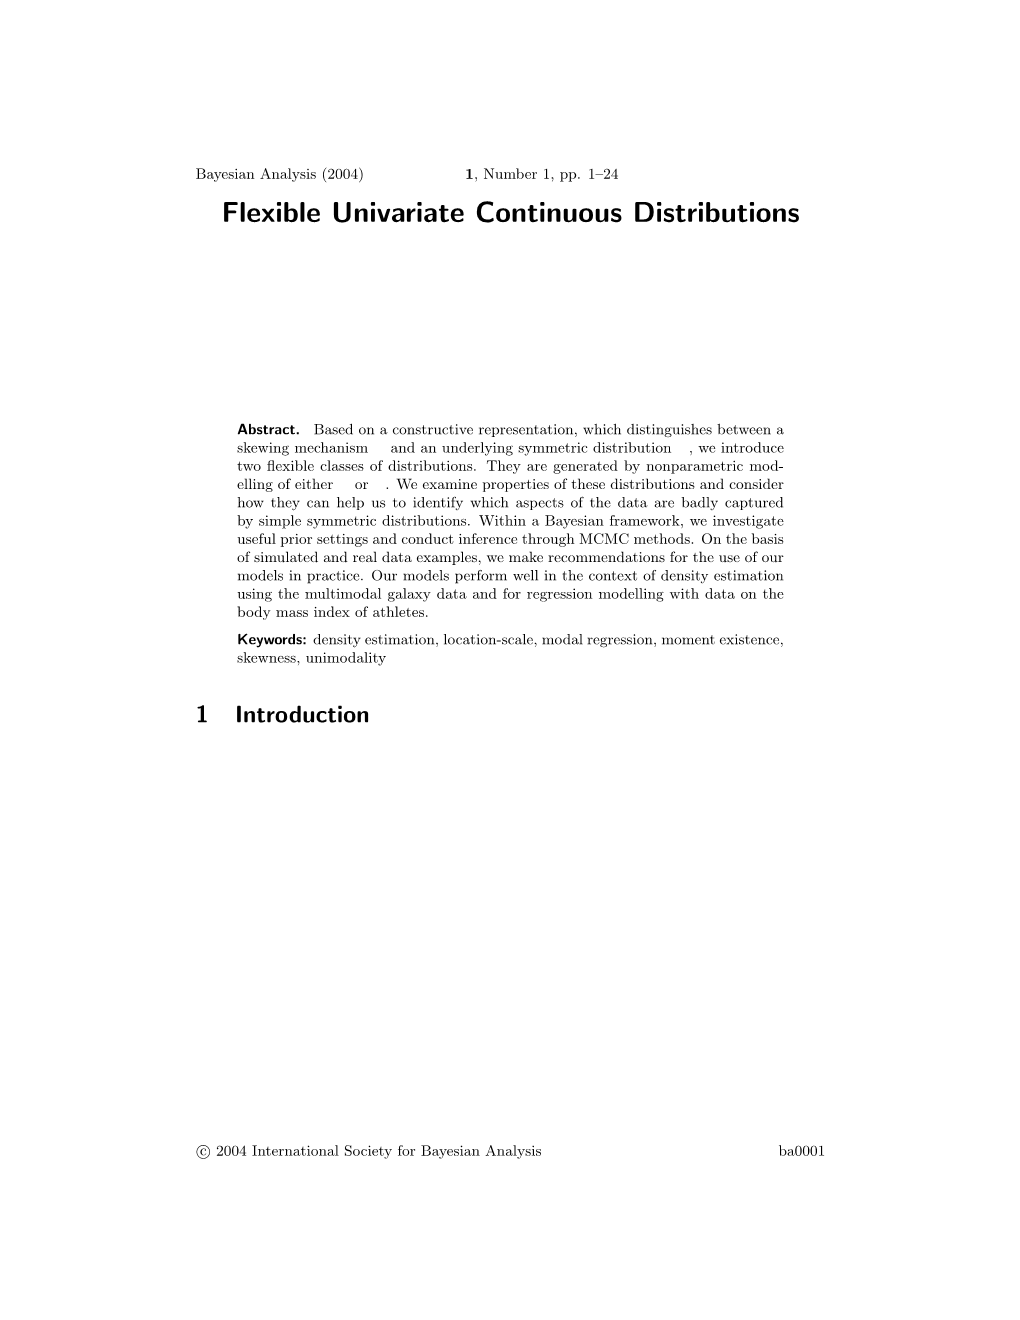 Flexible Univariate Continuous Distributions